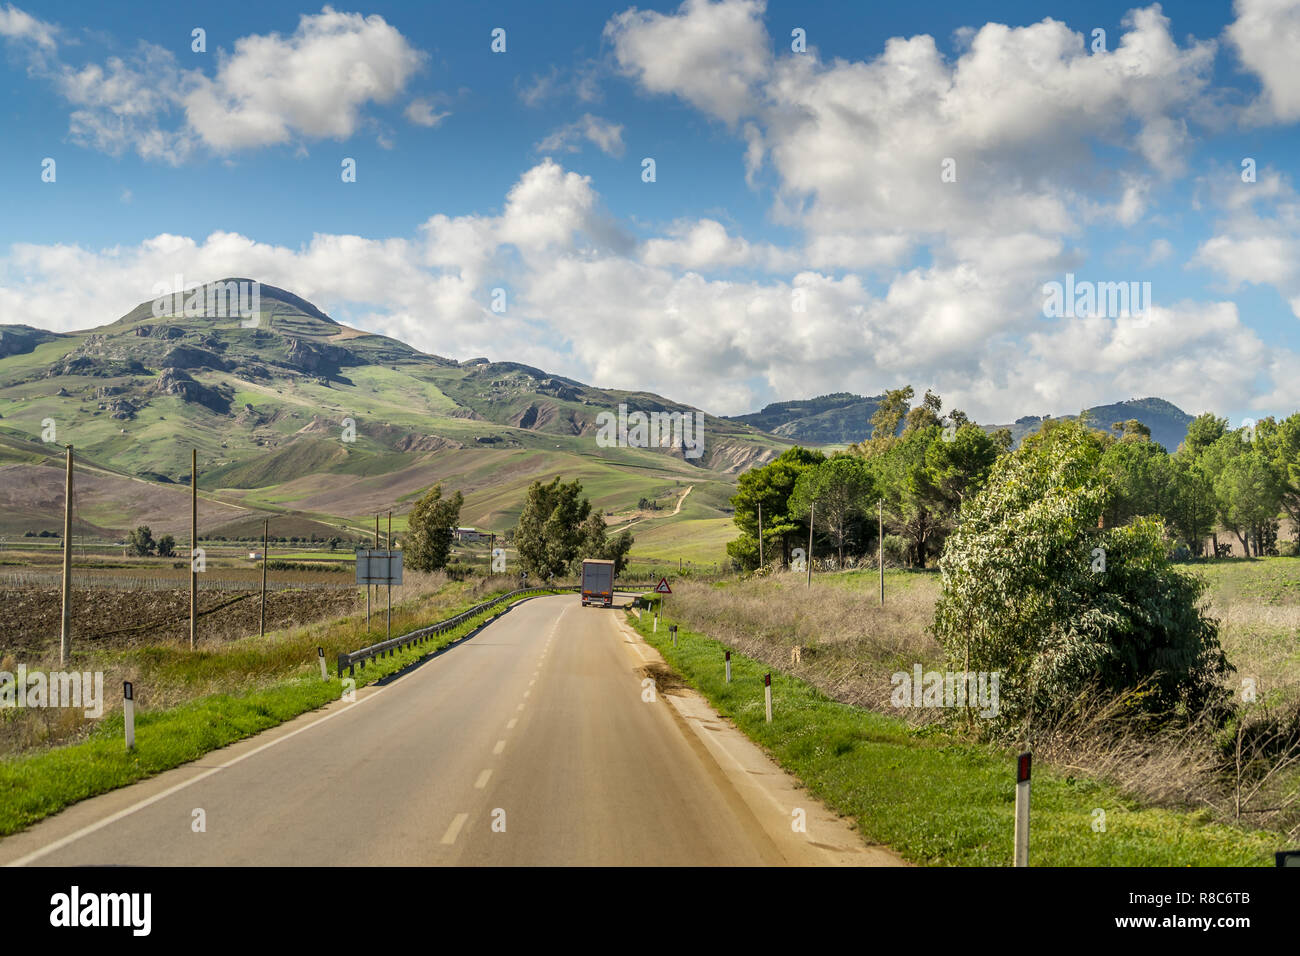 Reisen in Italien - Panorama Blick auf Straßen, Häuser, Berge, und agrarischen Felder in der Nähe von Agrigento, Sizilien Italien Stockfoto